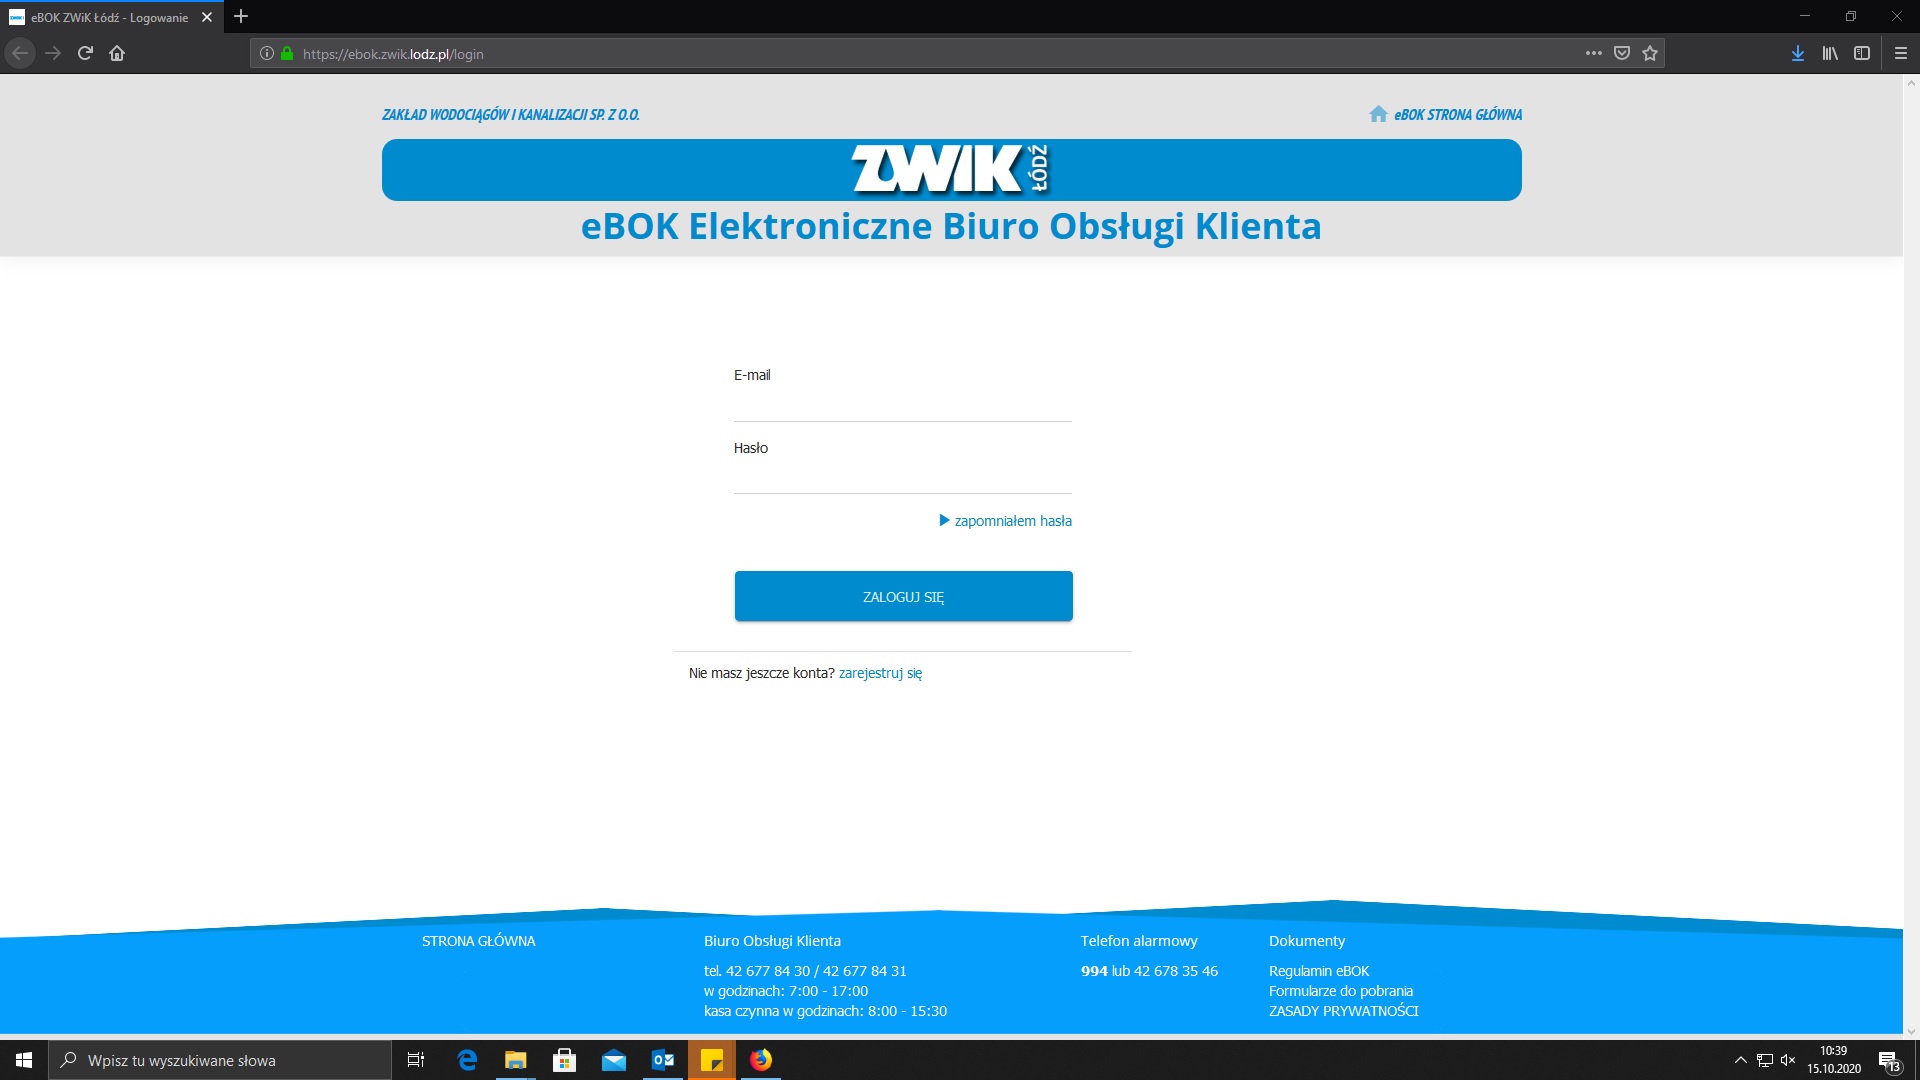 Link do Elektronicznego Biura Obsługi Klienta ZWiK - screen z ekranu komputera